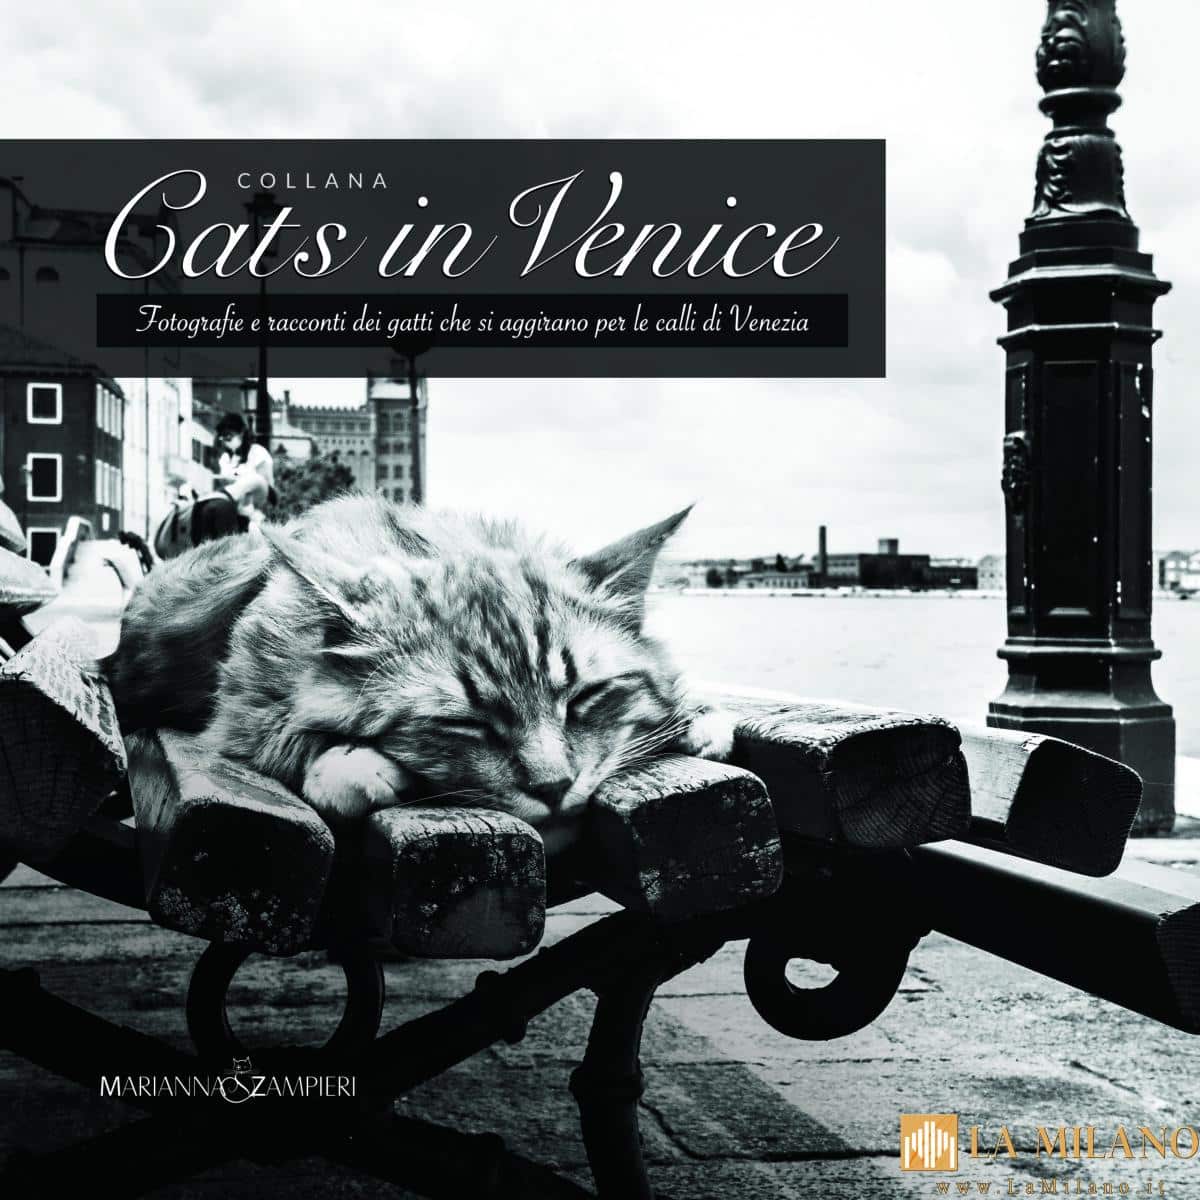 Venezia, festa del gatto: si presenta il libro di foto e racconti “Cats in Venice”.